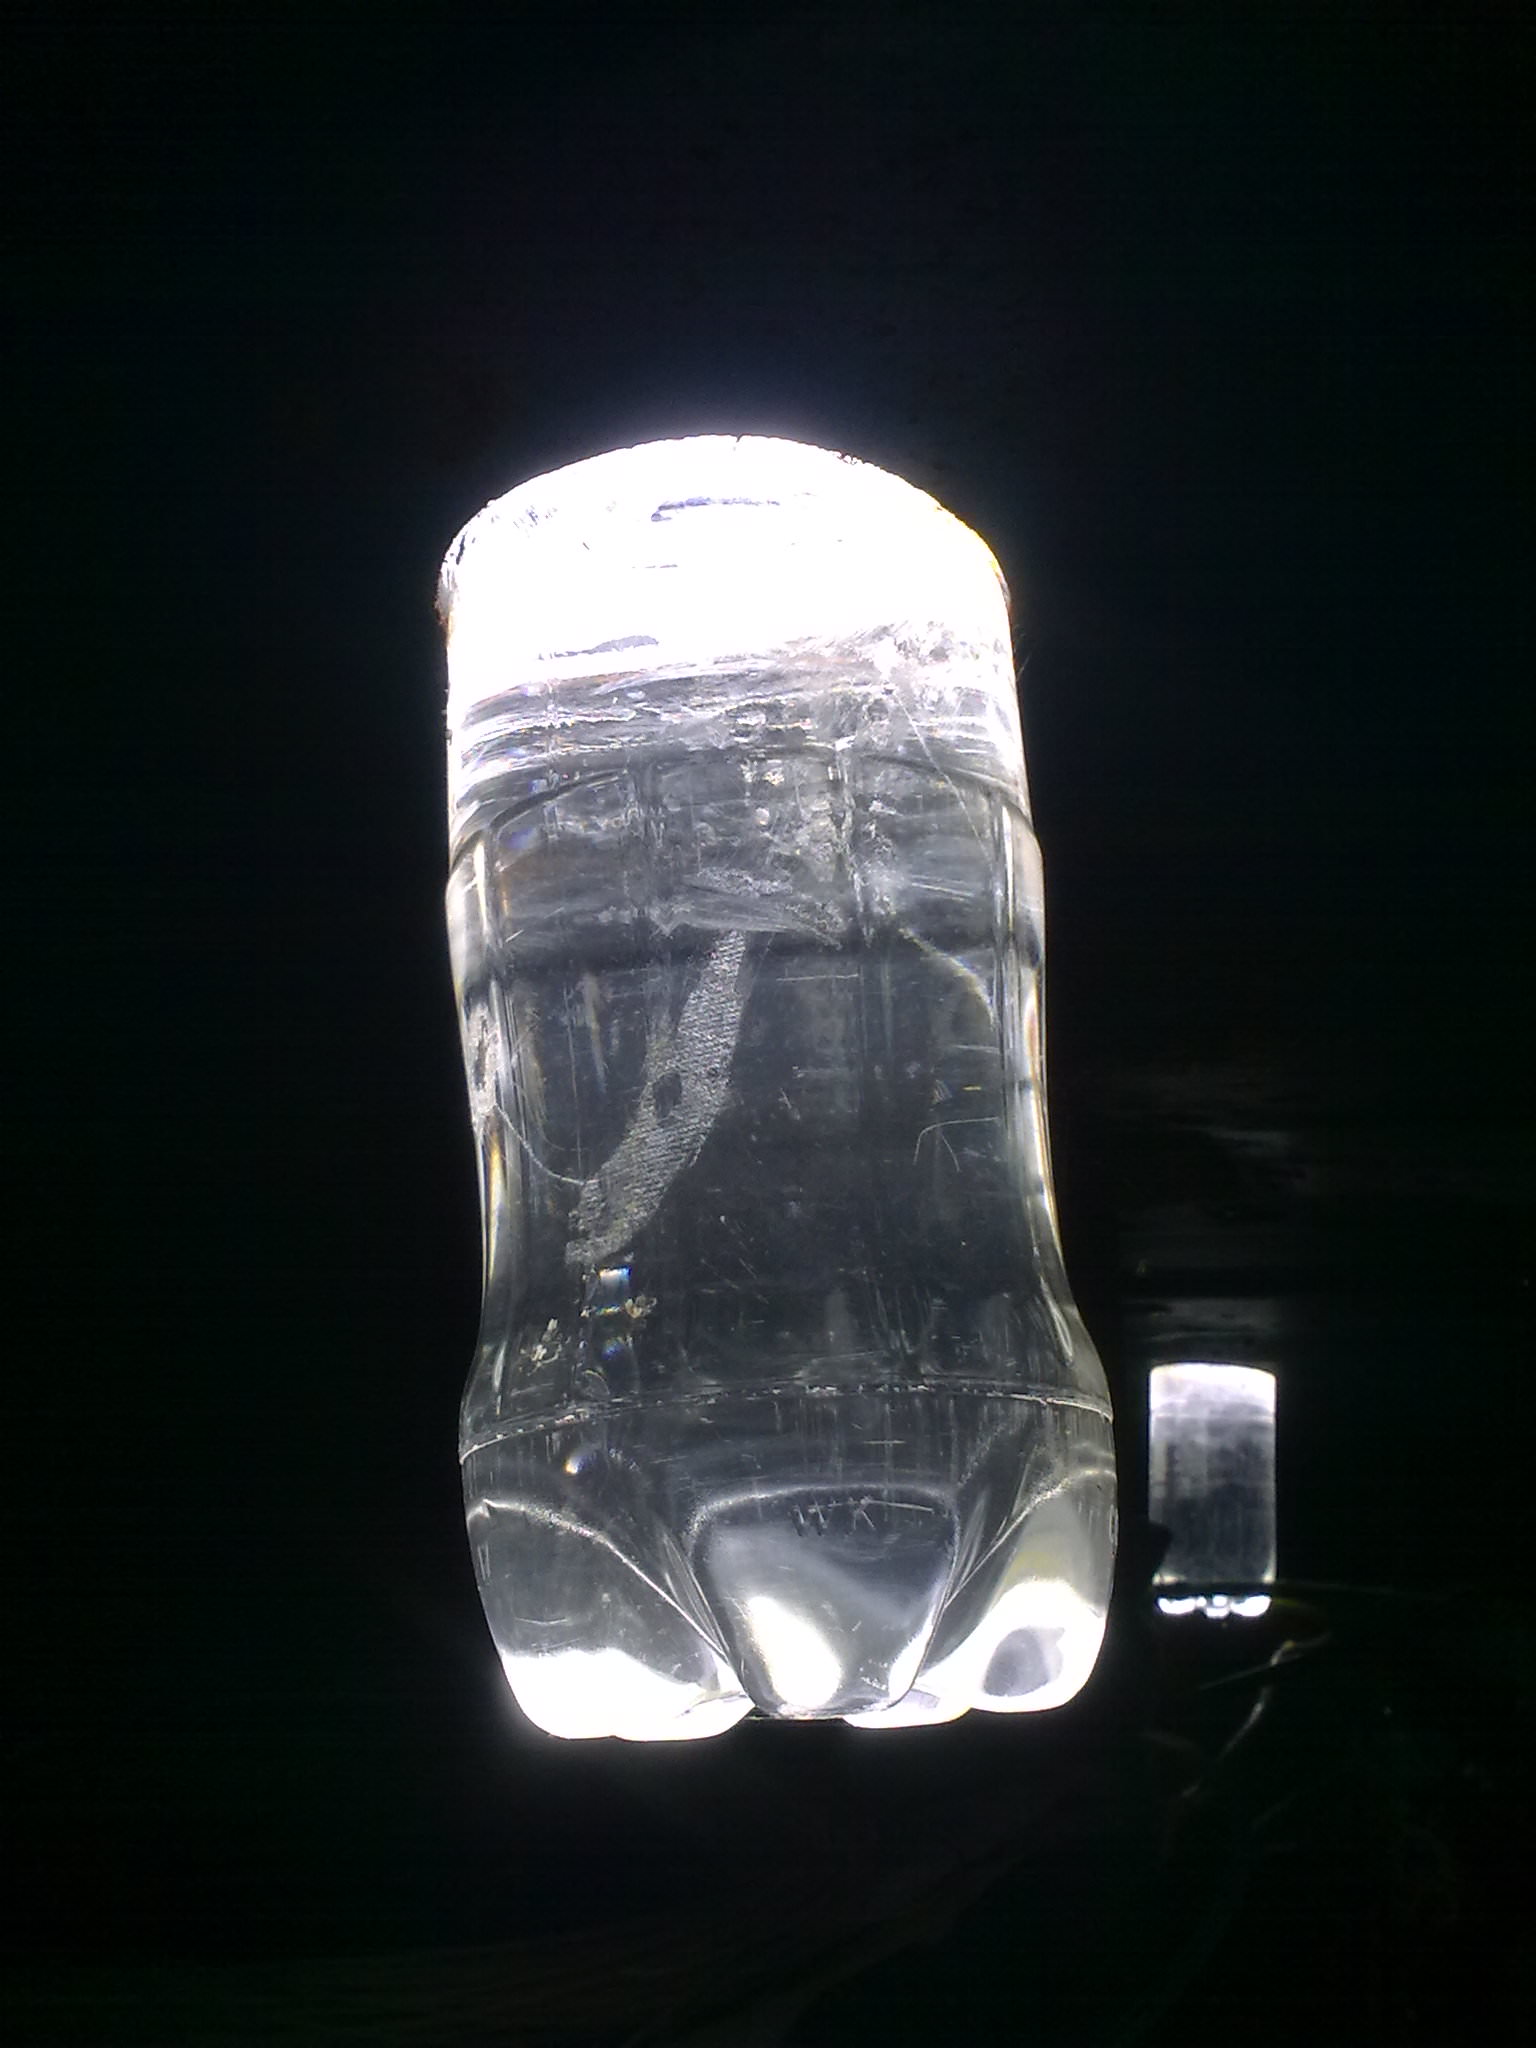 Plastic bottle full of water installed in ceiling as light bulb